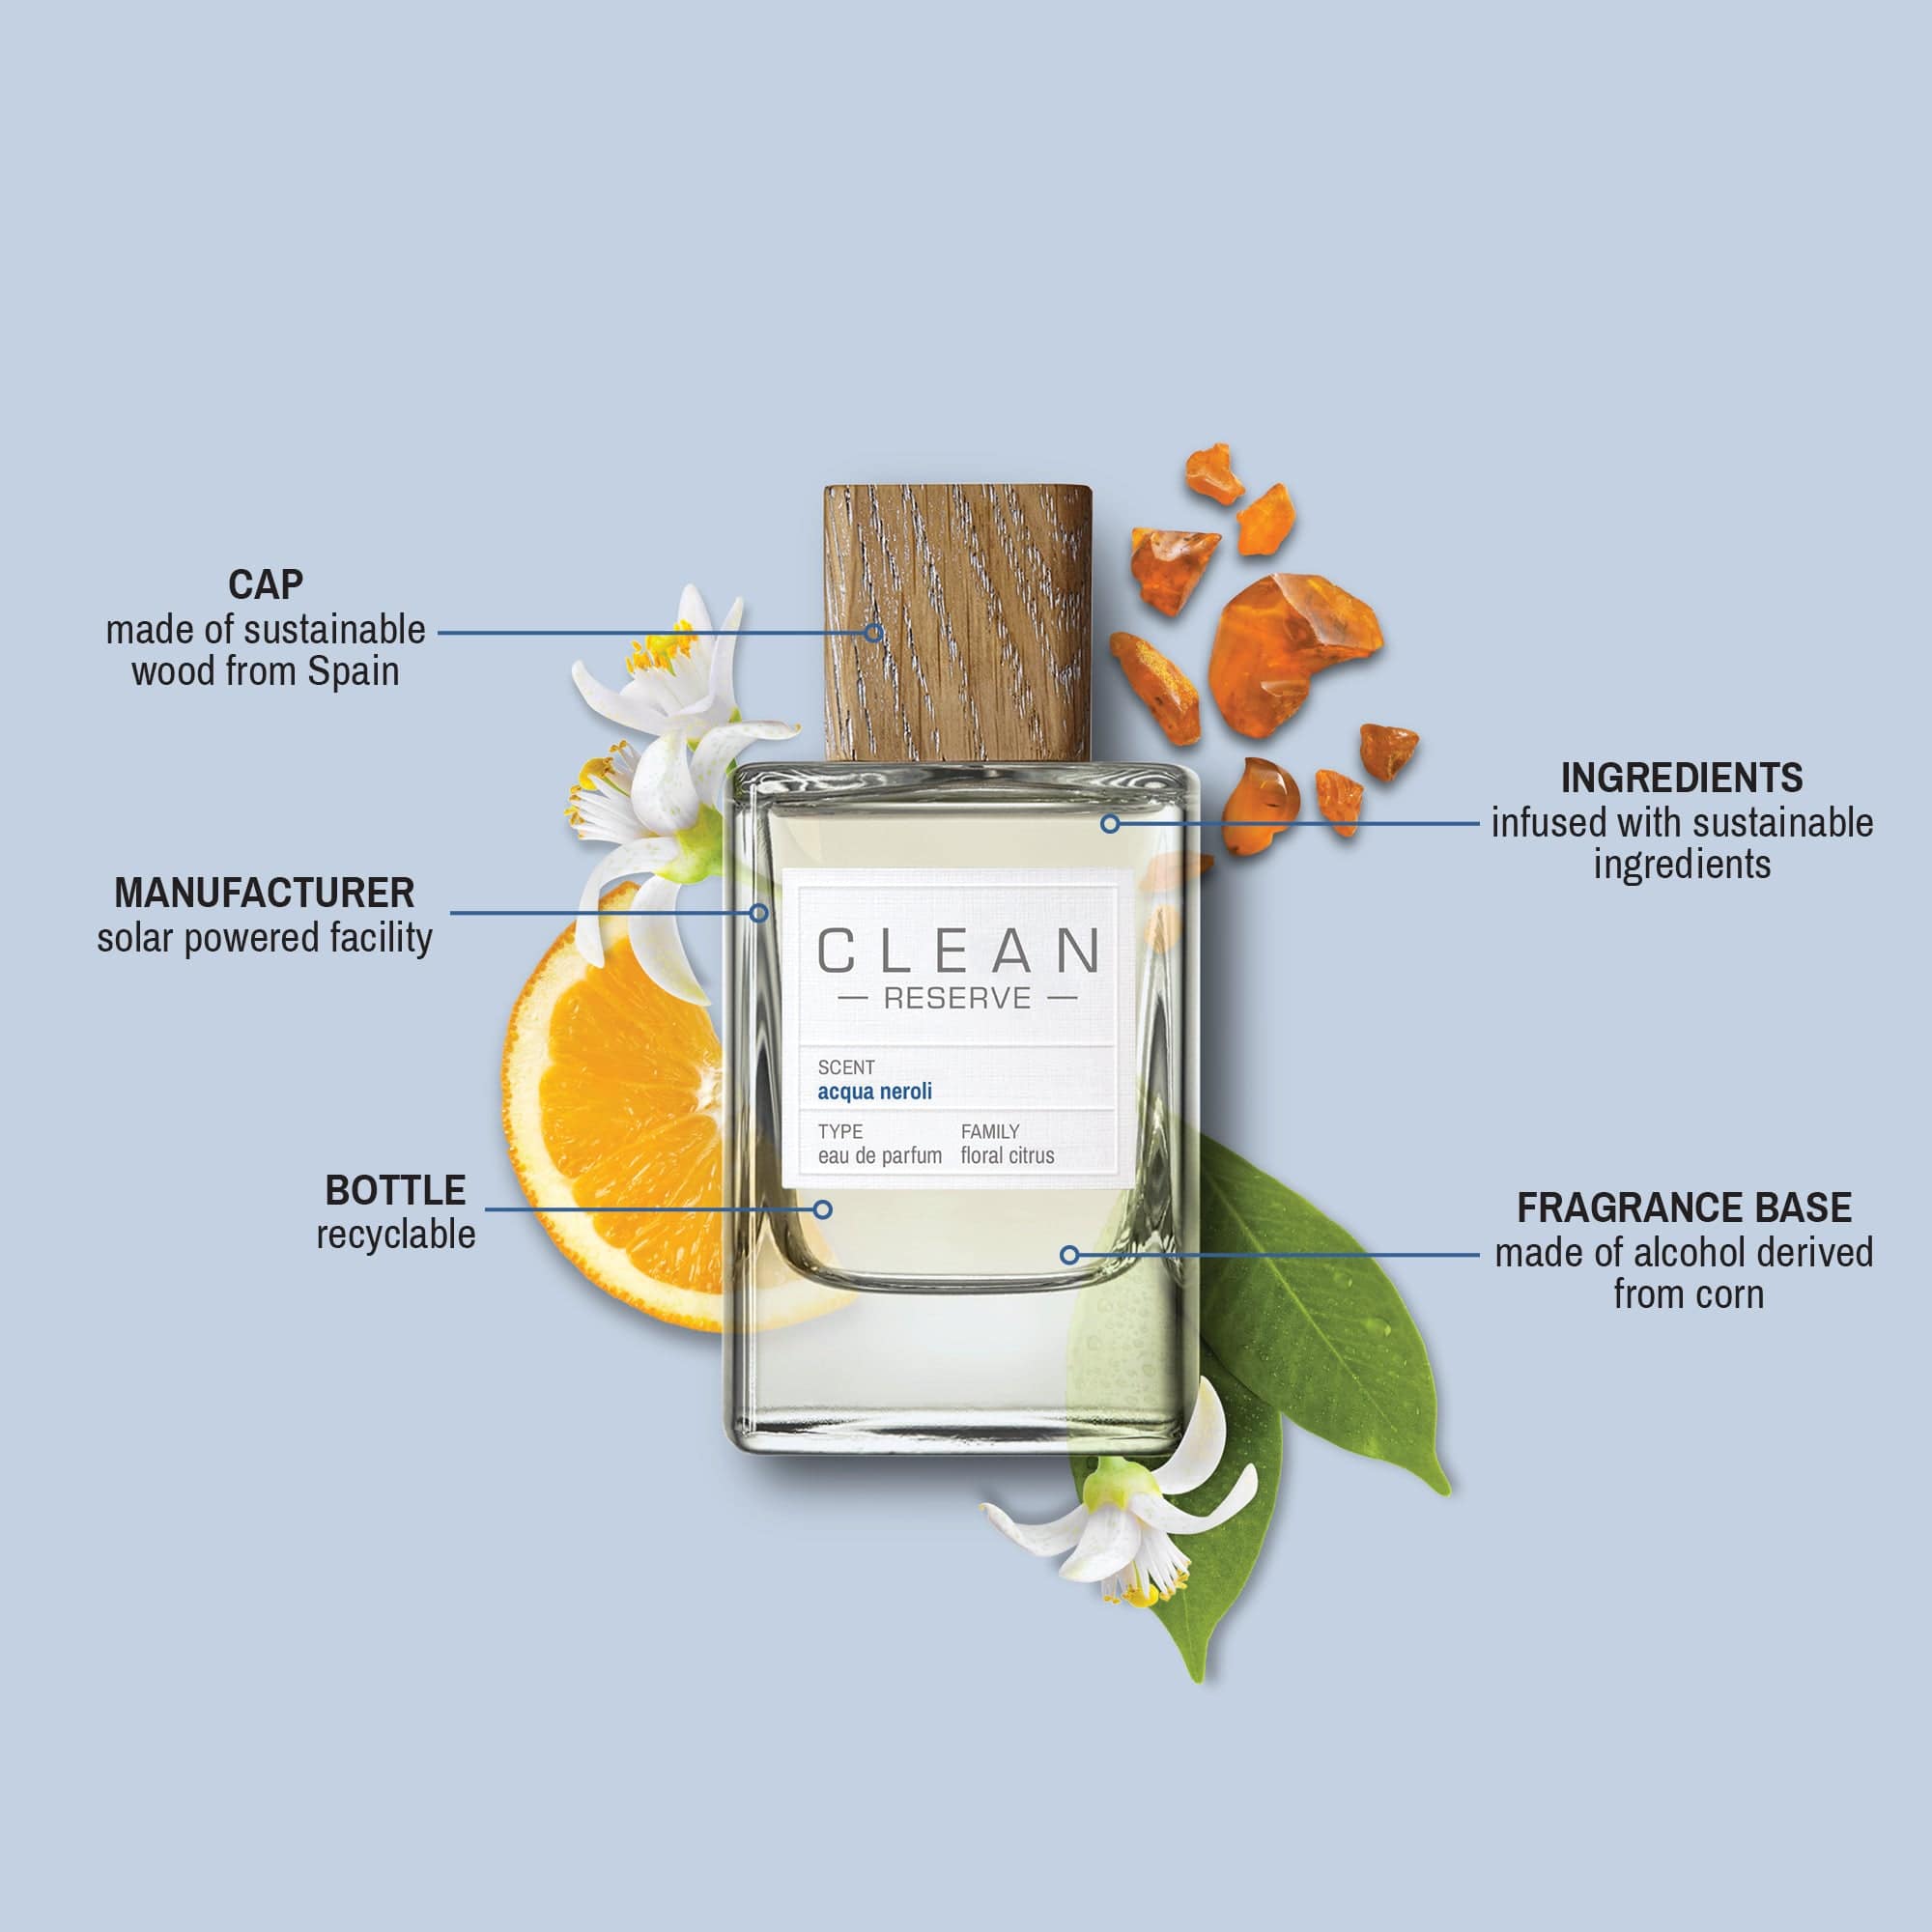 CLEAN RESERVE Acqua Neroli Eau de Parfum – CLEAN Beauty Collective